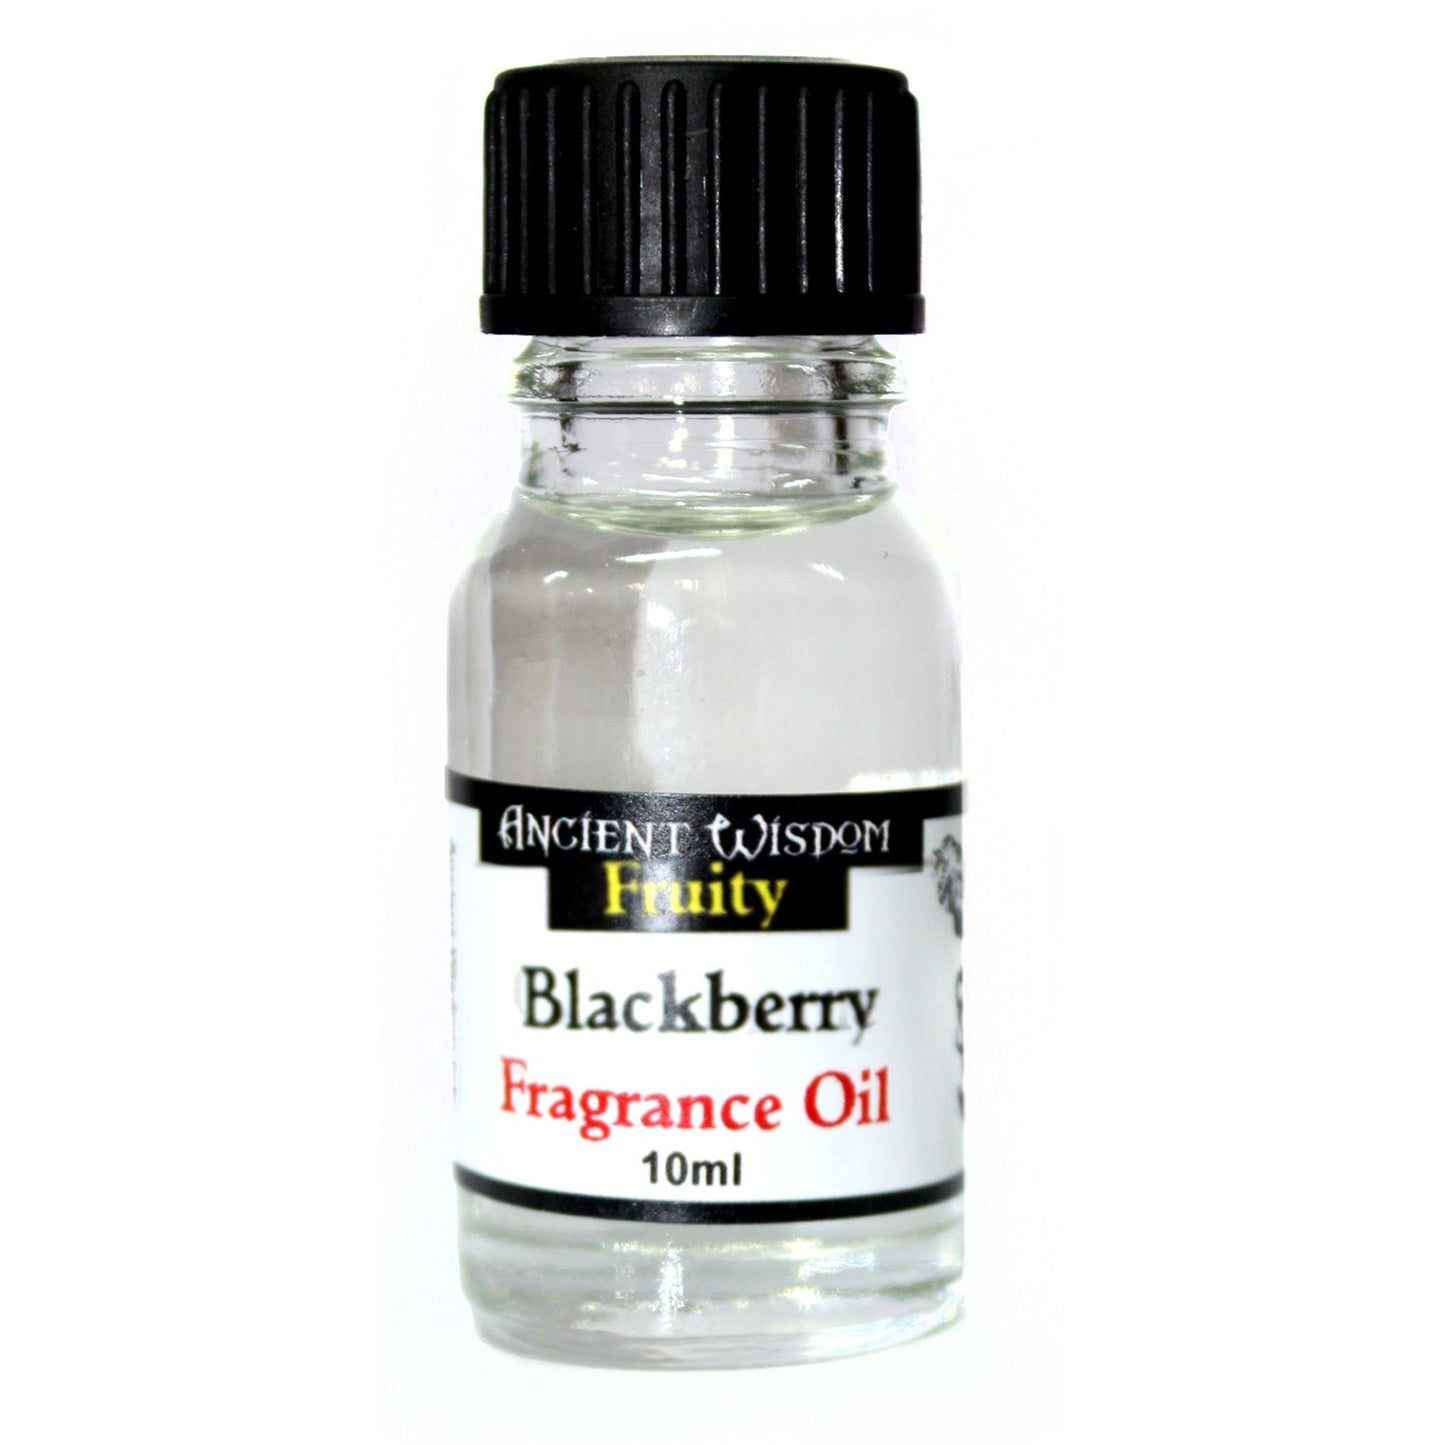 10ml Blackberry Fragrance Oil